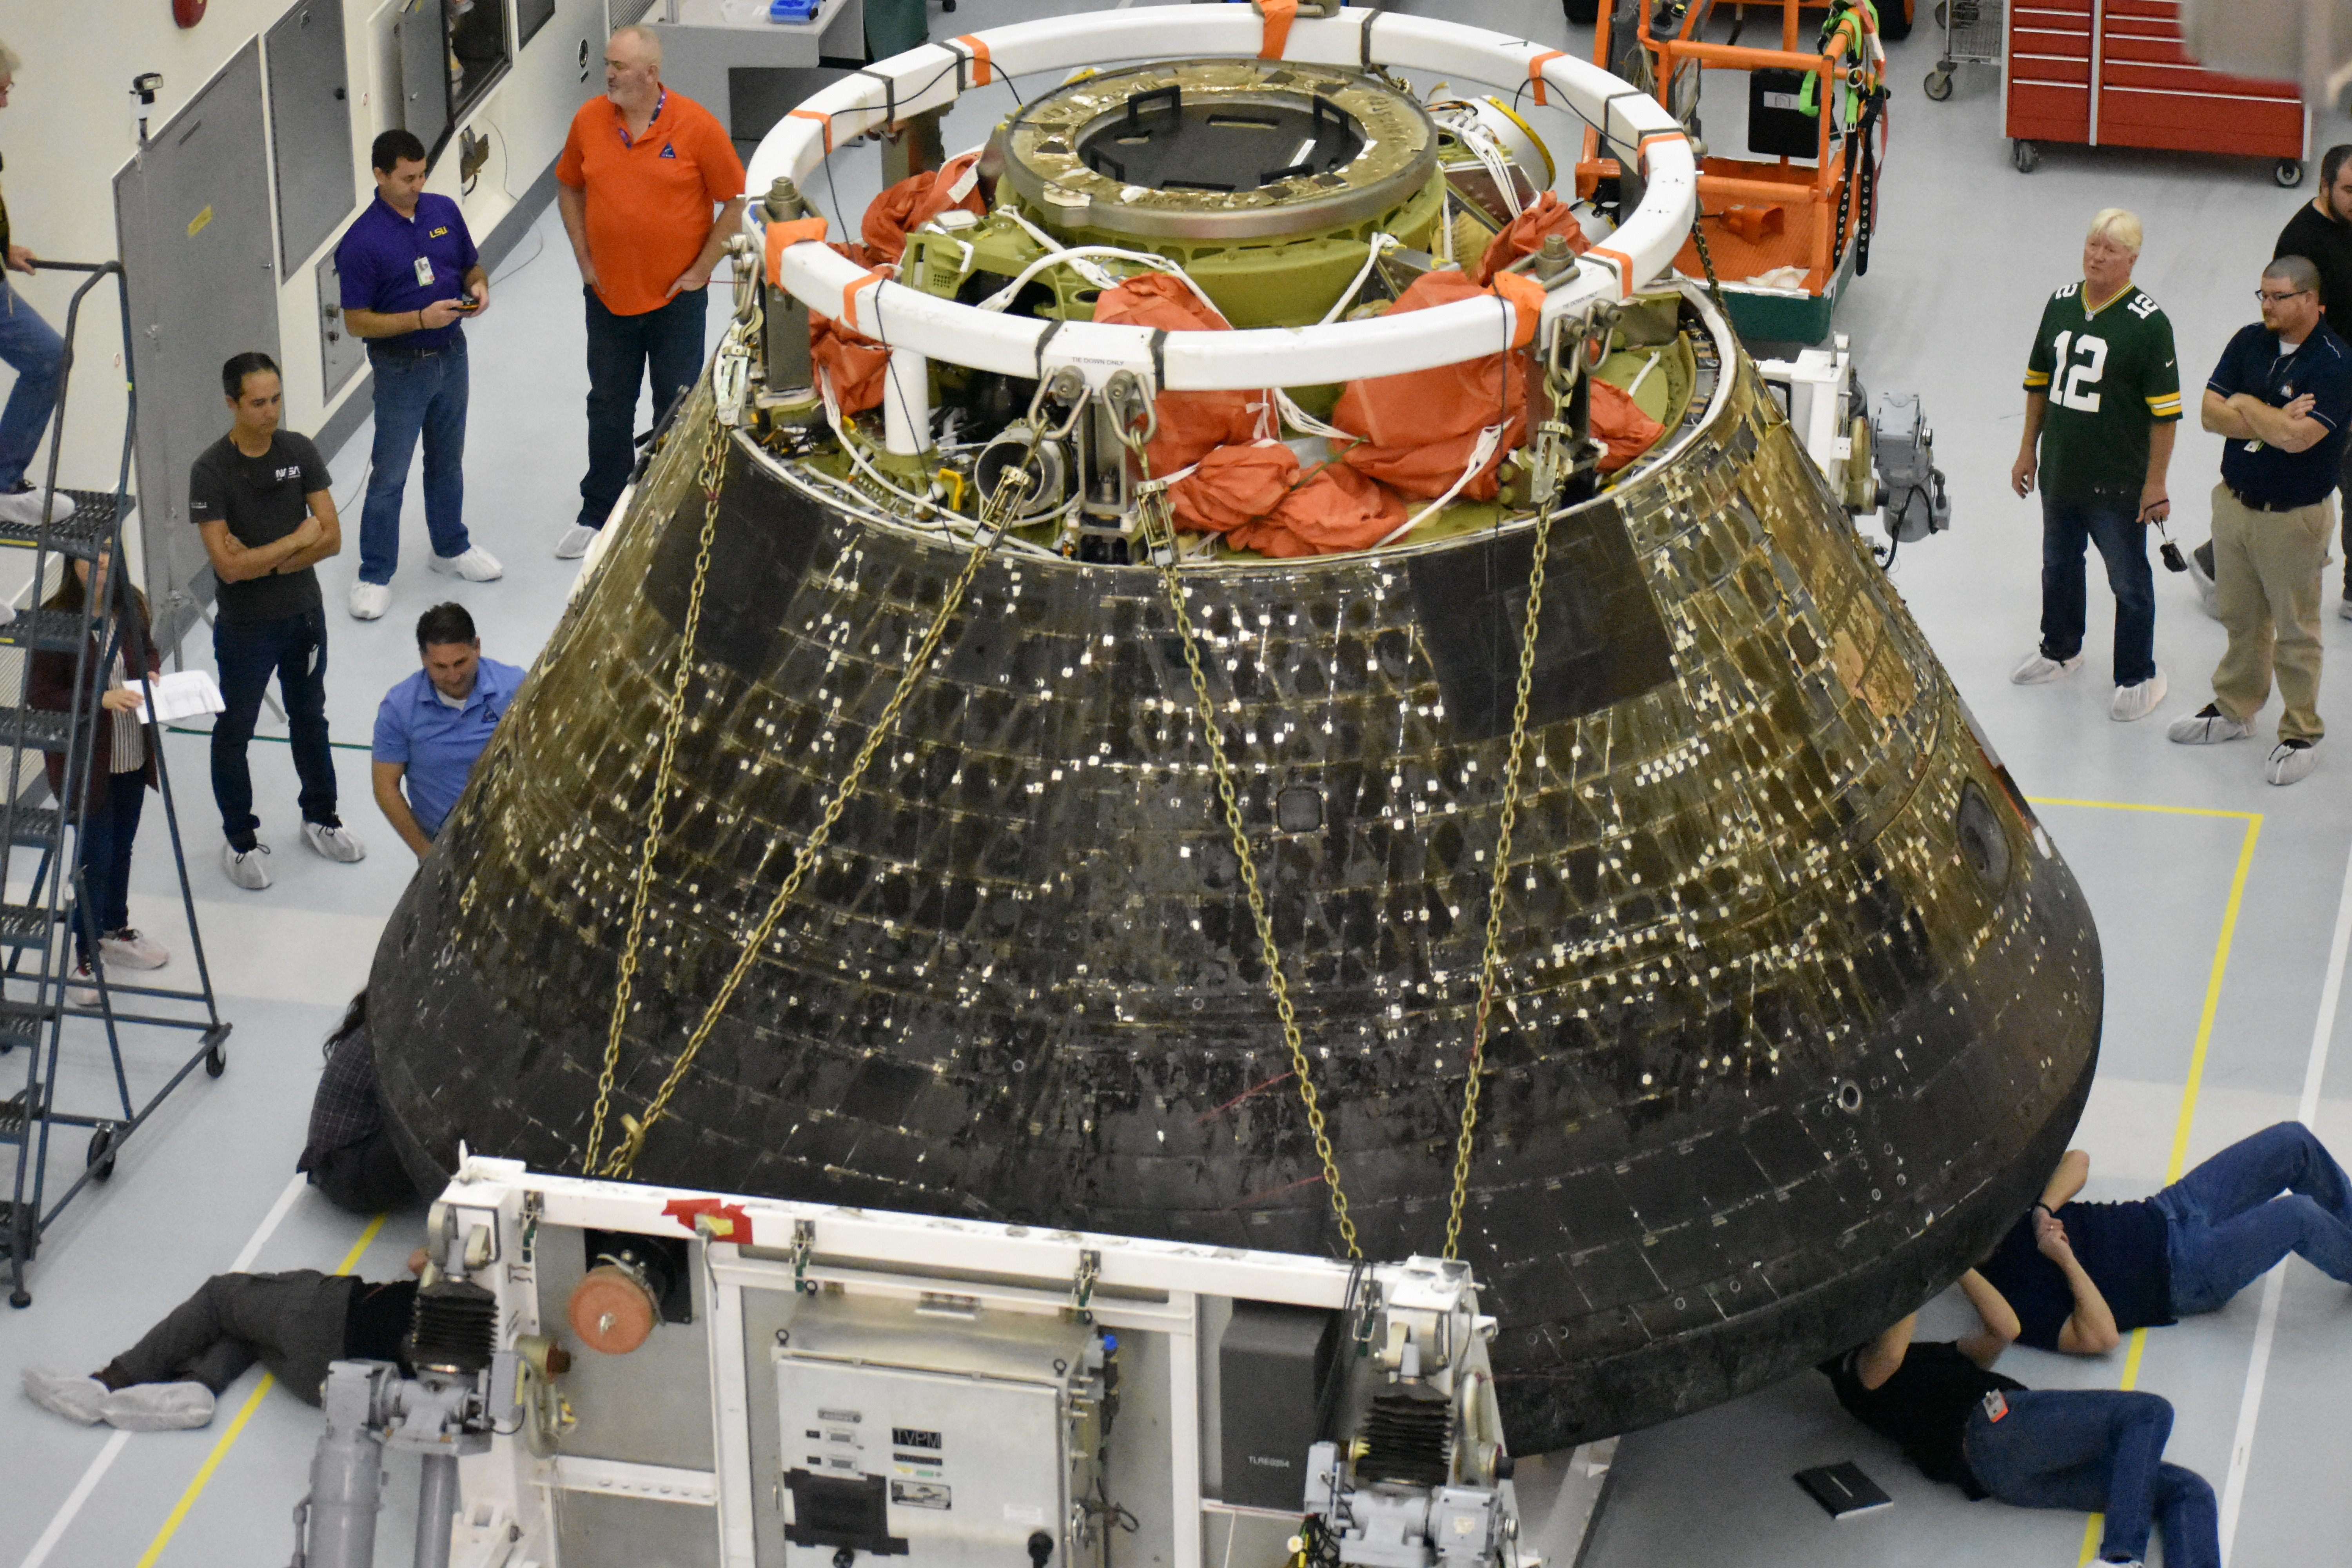 Los técnicos inspeccionan el escudo térmico de la nave espacial Artemis 1 Orion en el Centro Espacial Kennedy de la NASA en Florida.  La foto fue publicada el 6 de enero de 2023.